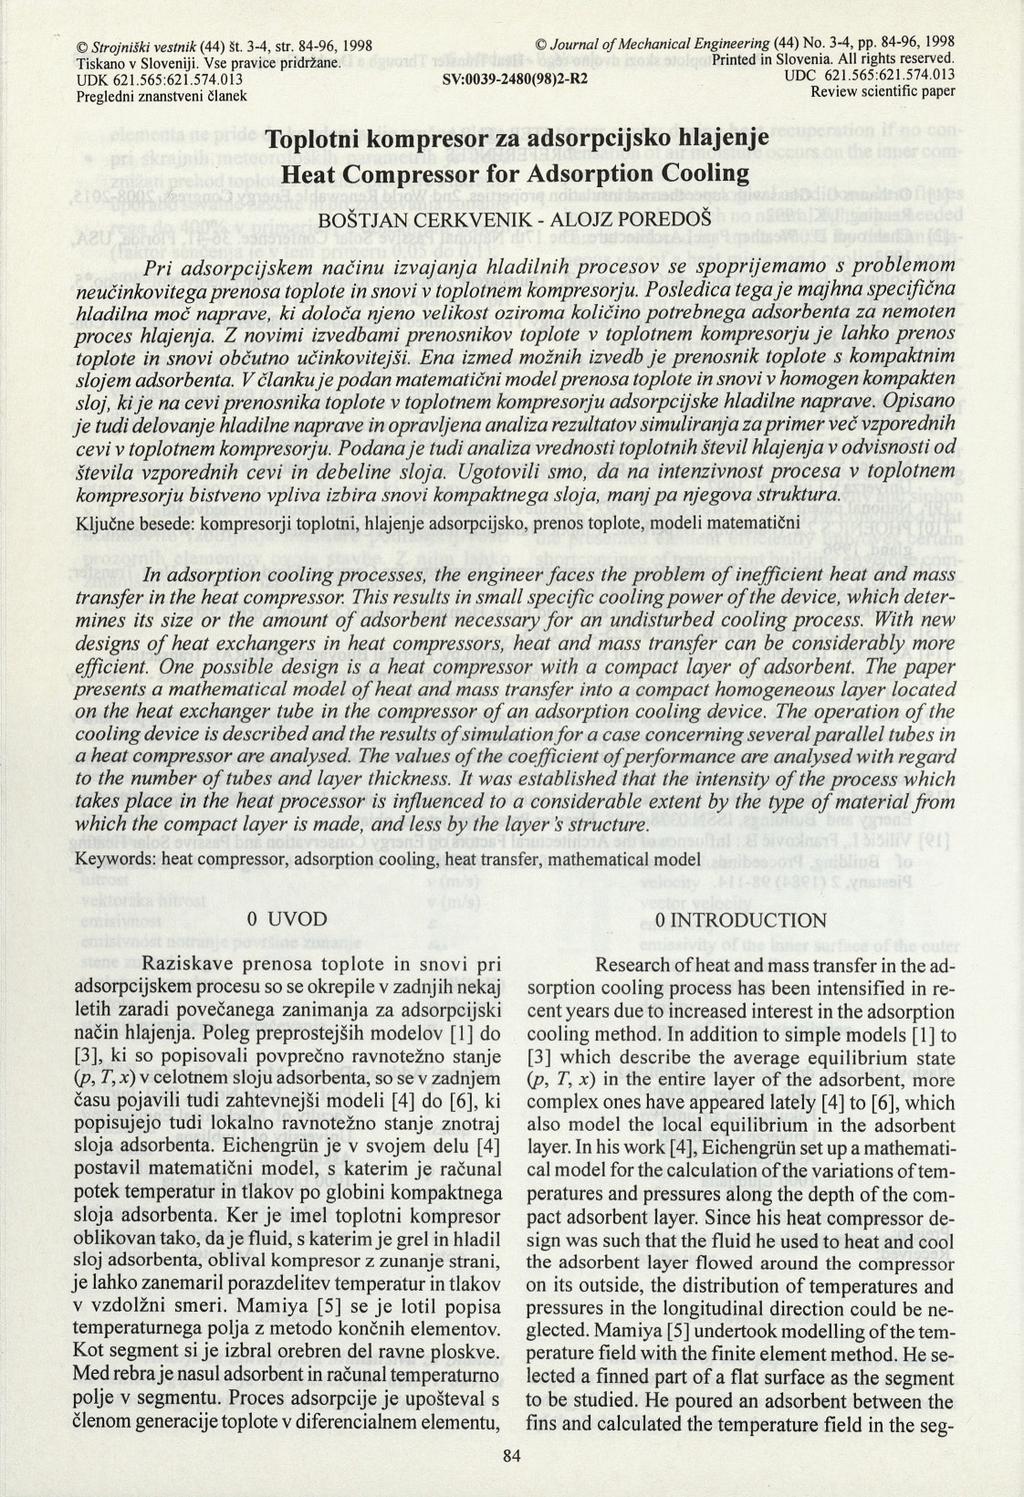 Strojniški vestnik (44) št. 3-4, str. 84-96, 1998 Journal of Mechanical Engineering (44) No. 3-4, pp. 84-96, 1998 Tiskano v Sloveniji. Vse pravice pridržane. Printed in Slovenia. All rights reserved.